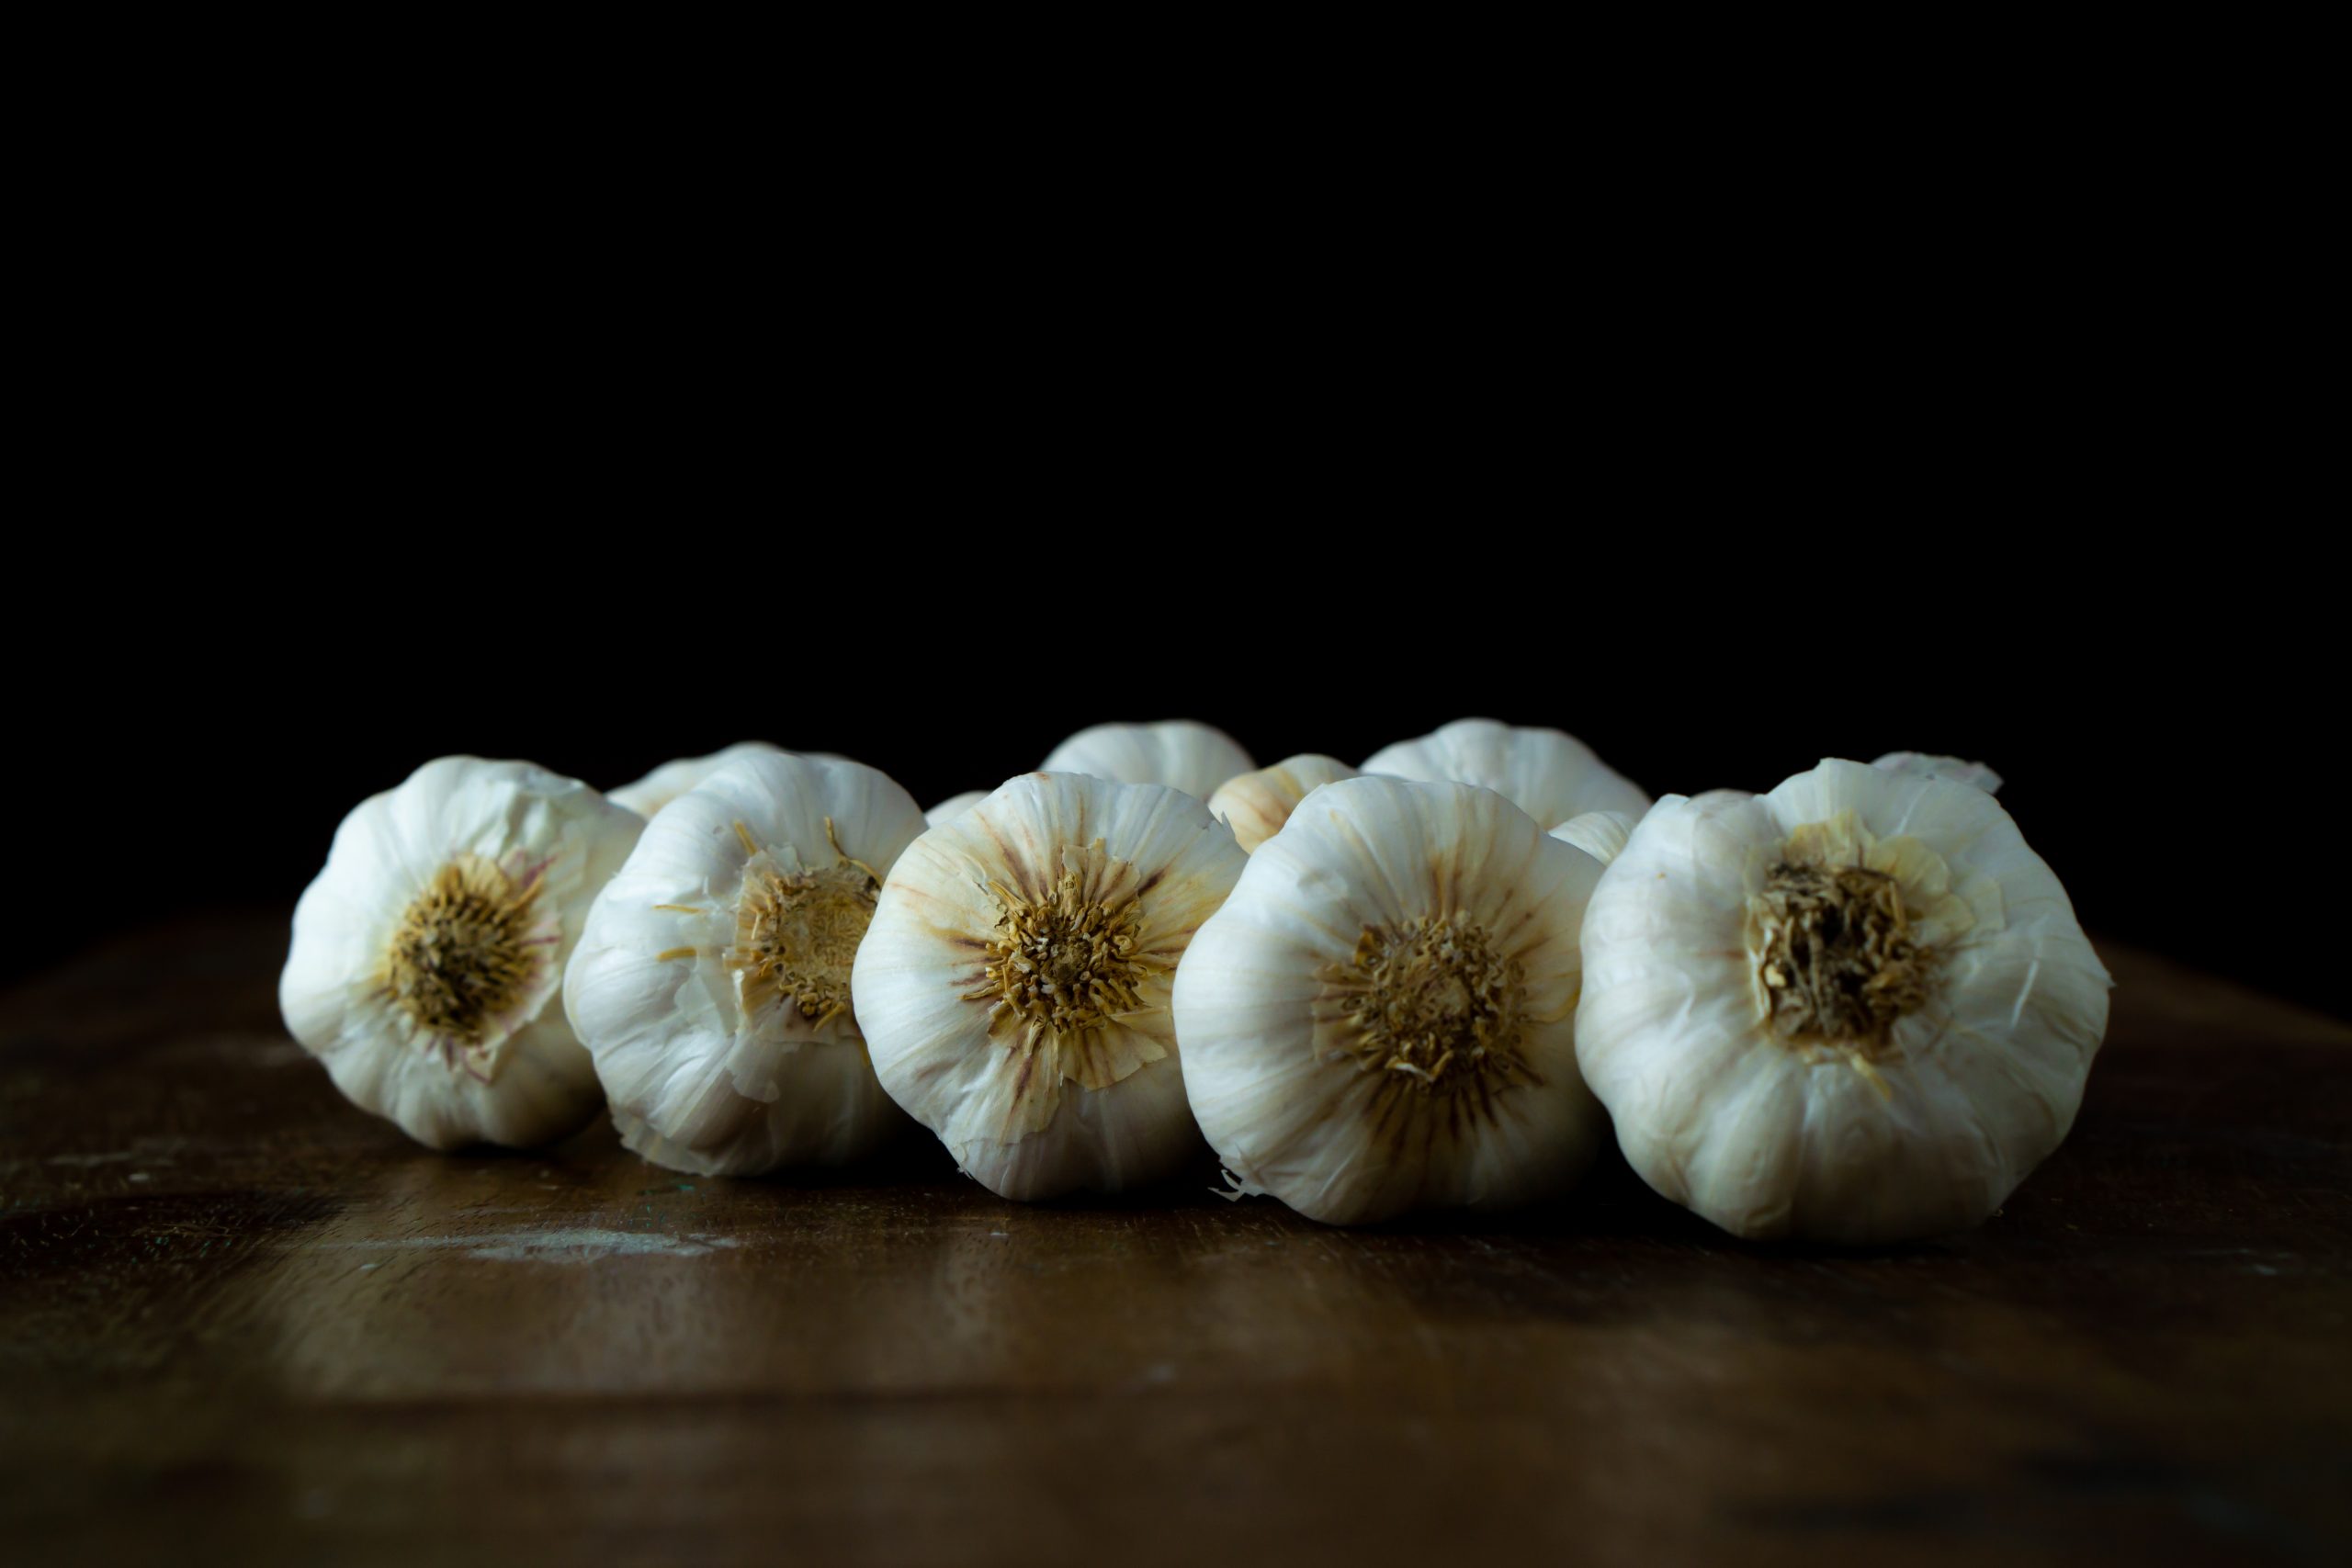 Garlic bulbs on a table